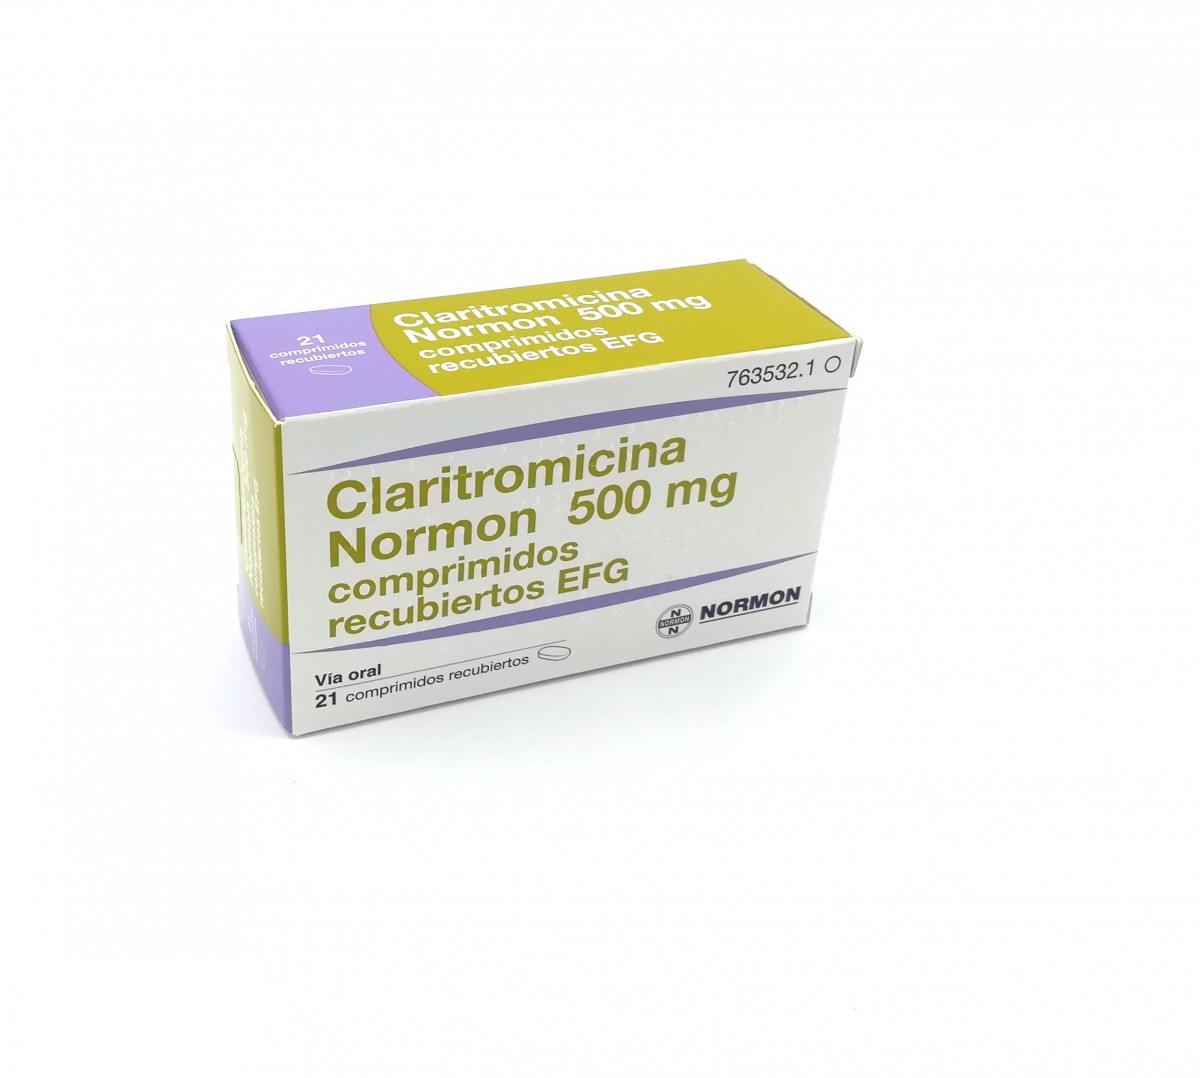 CLARITROMICINA NORMON 500 mg COMPRIMIDOS RECUBIERTOS EFG, 500 comprimidos fotografía del envase.